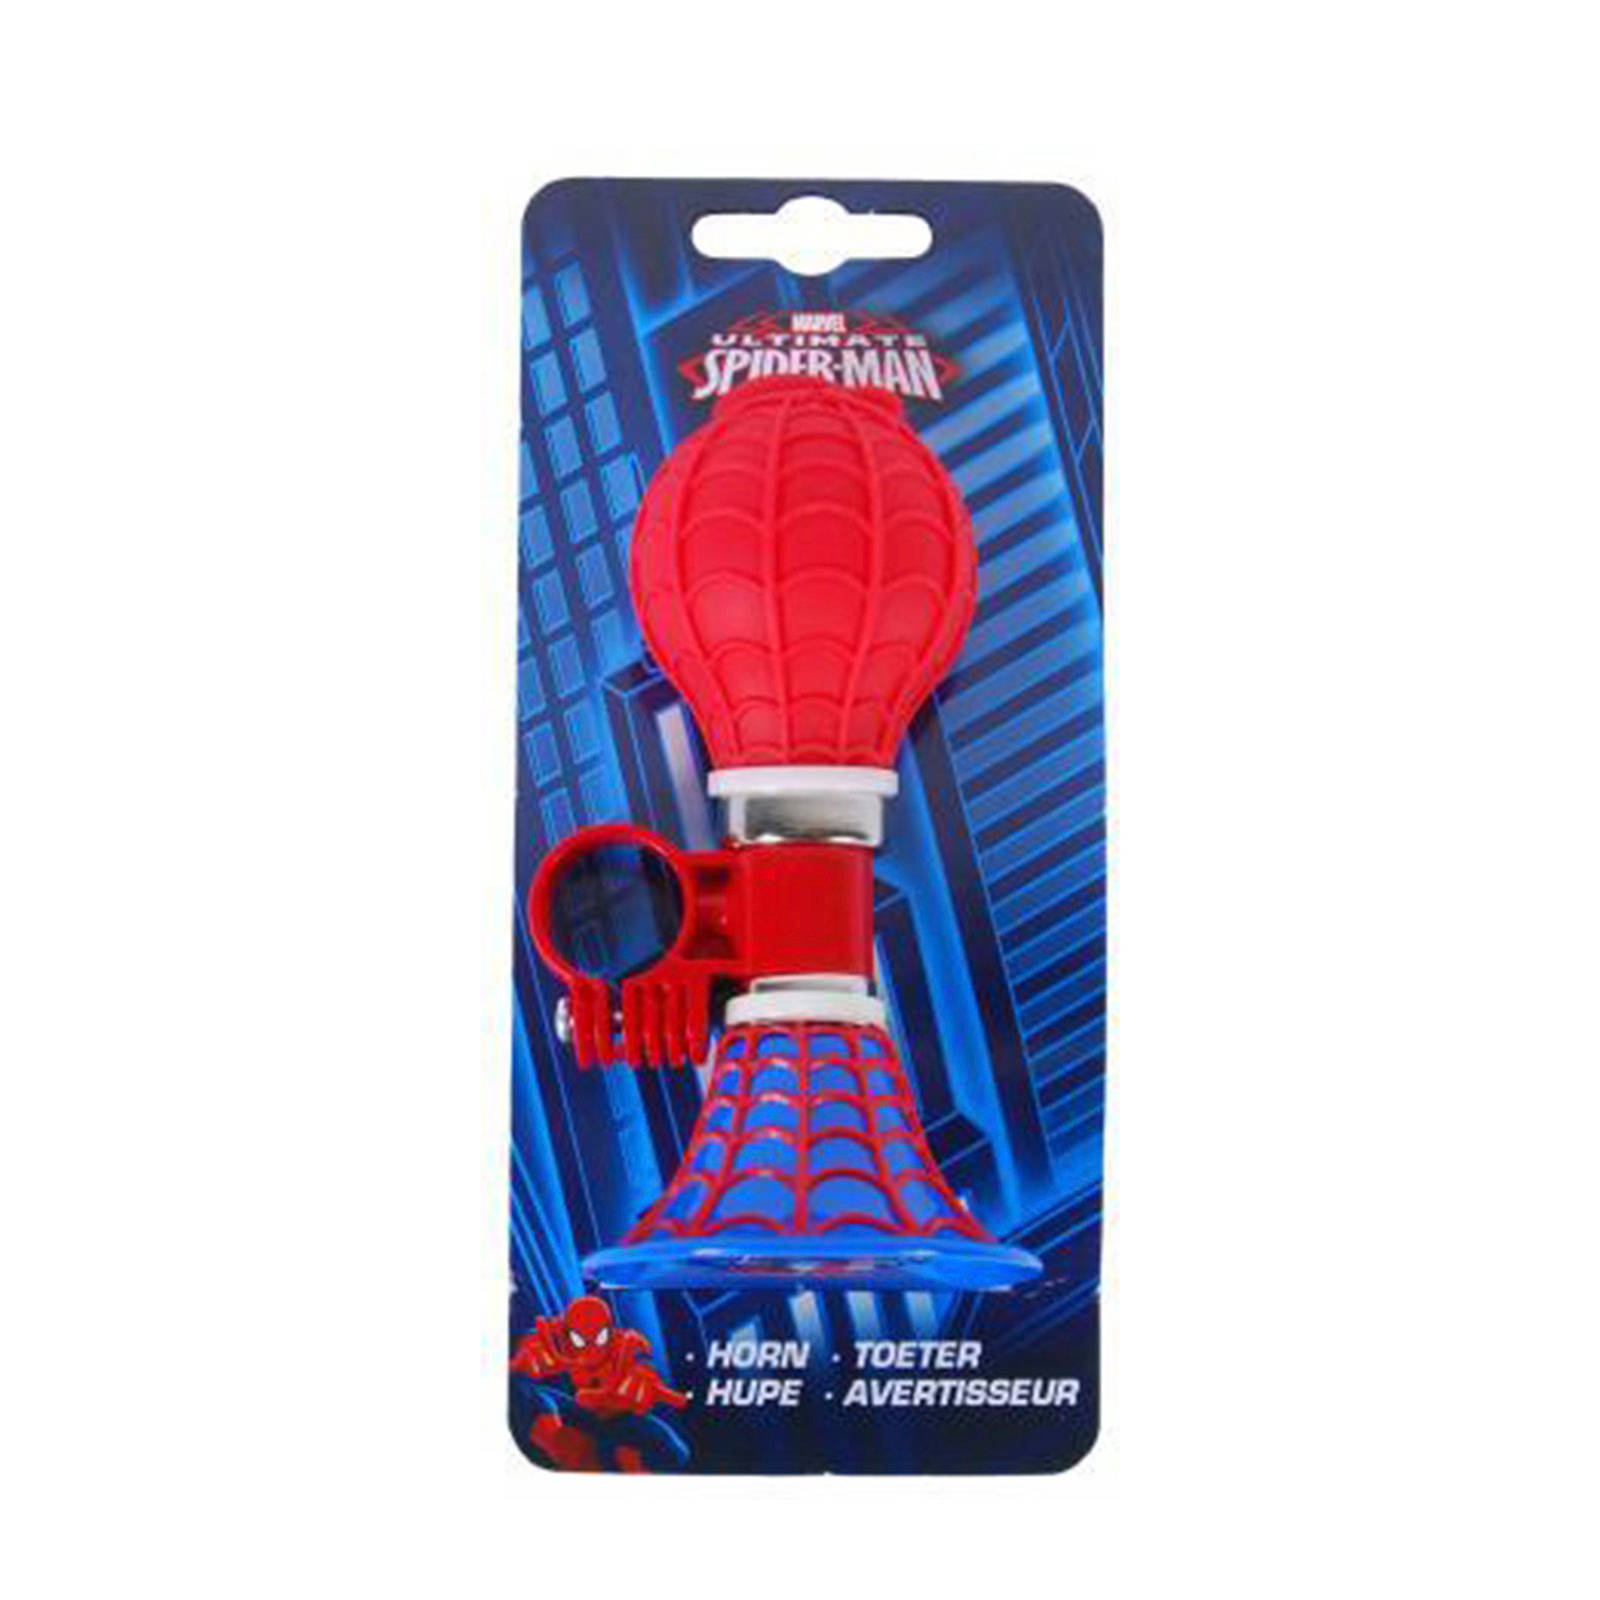 Marvel Fietstoeter Spider man 13 Cm Rood/blauw online kopen